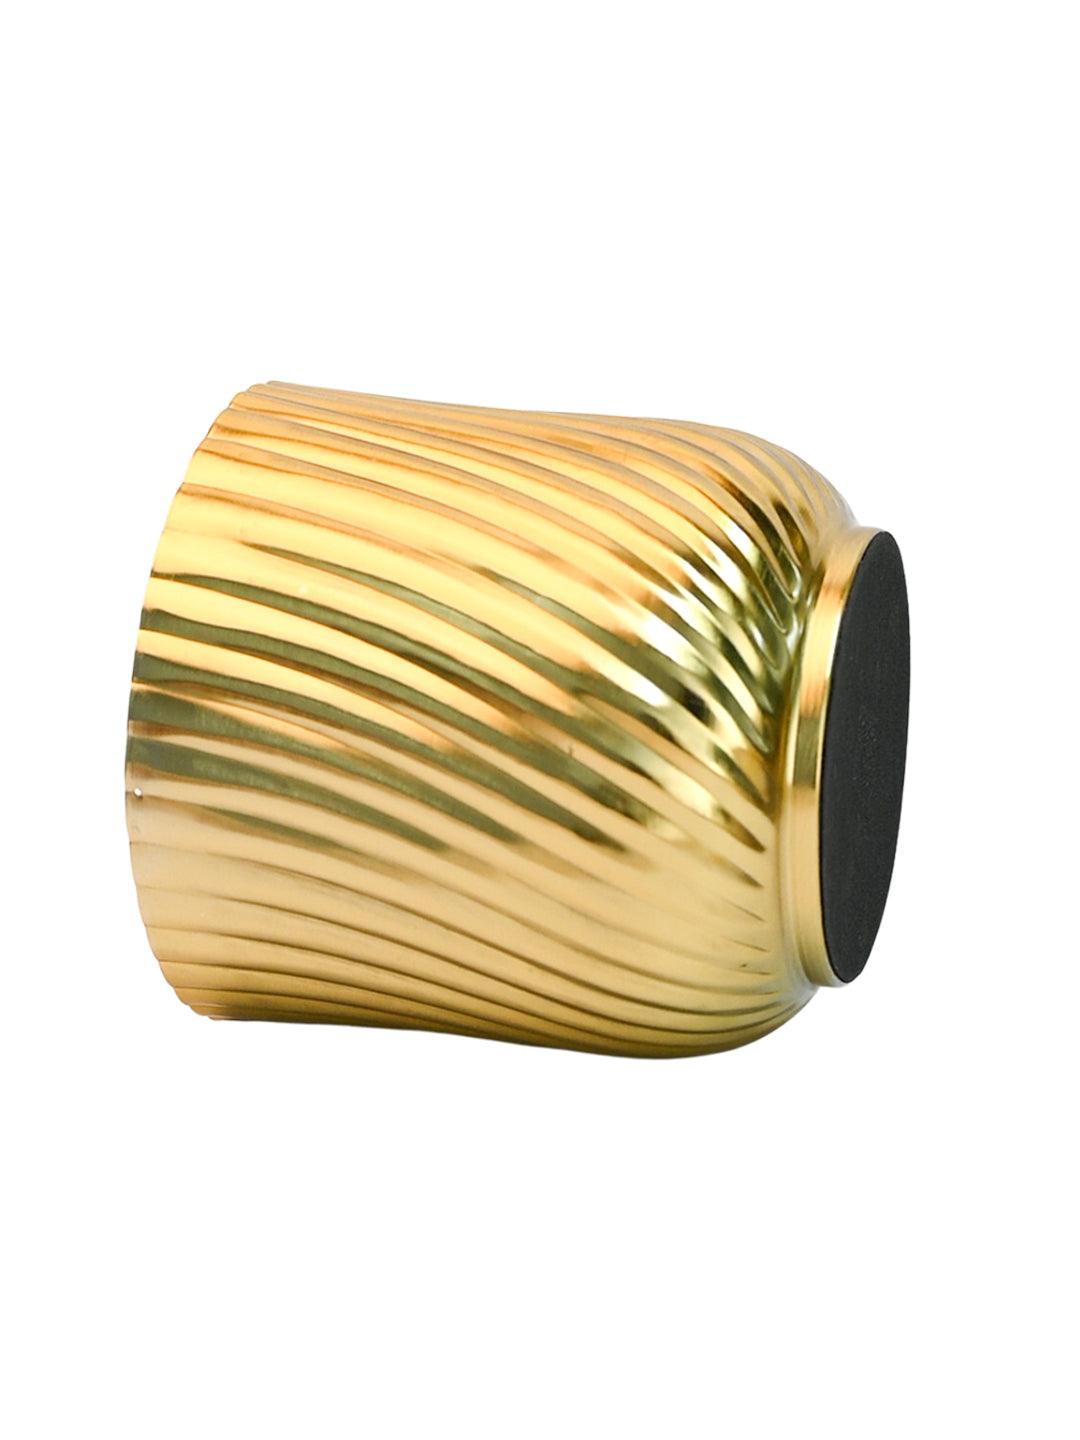 Ribbed Metal Vase - Golden